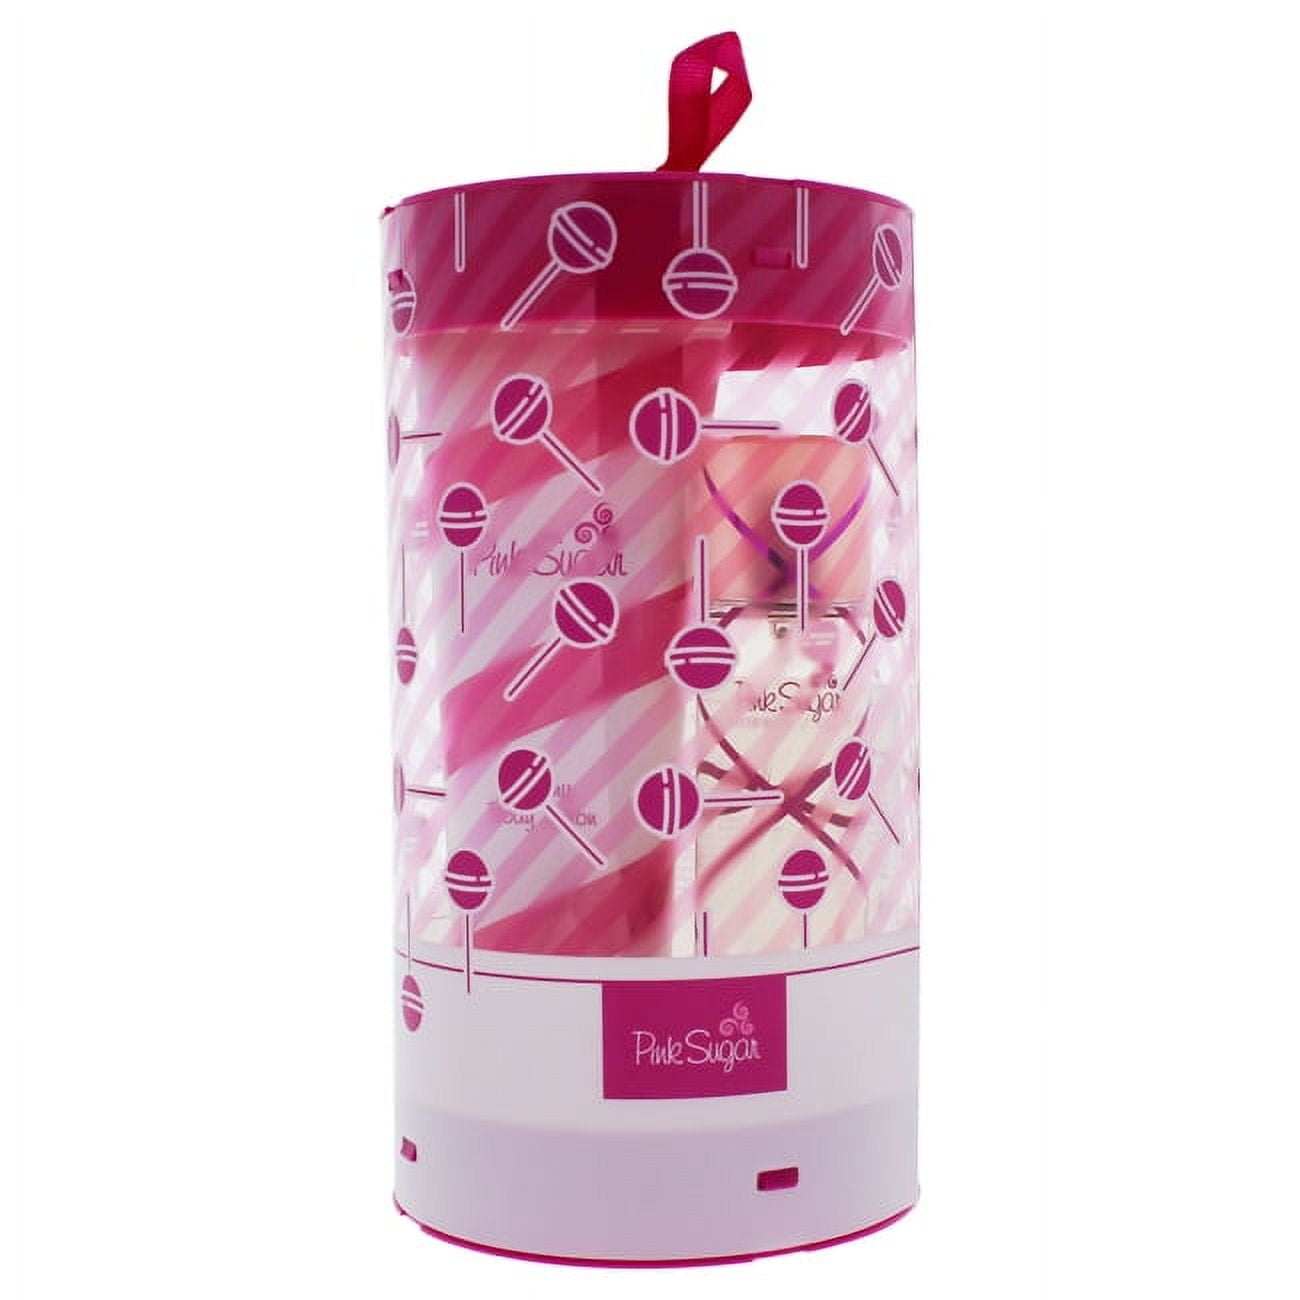 Pink Sugar Eau de Toilette, Perfume for Women, 3.4 oz 